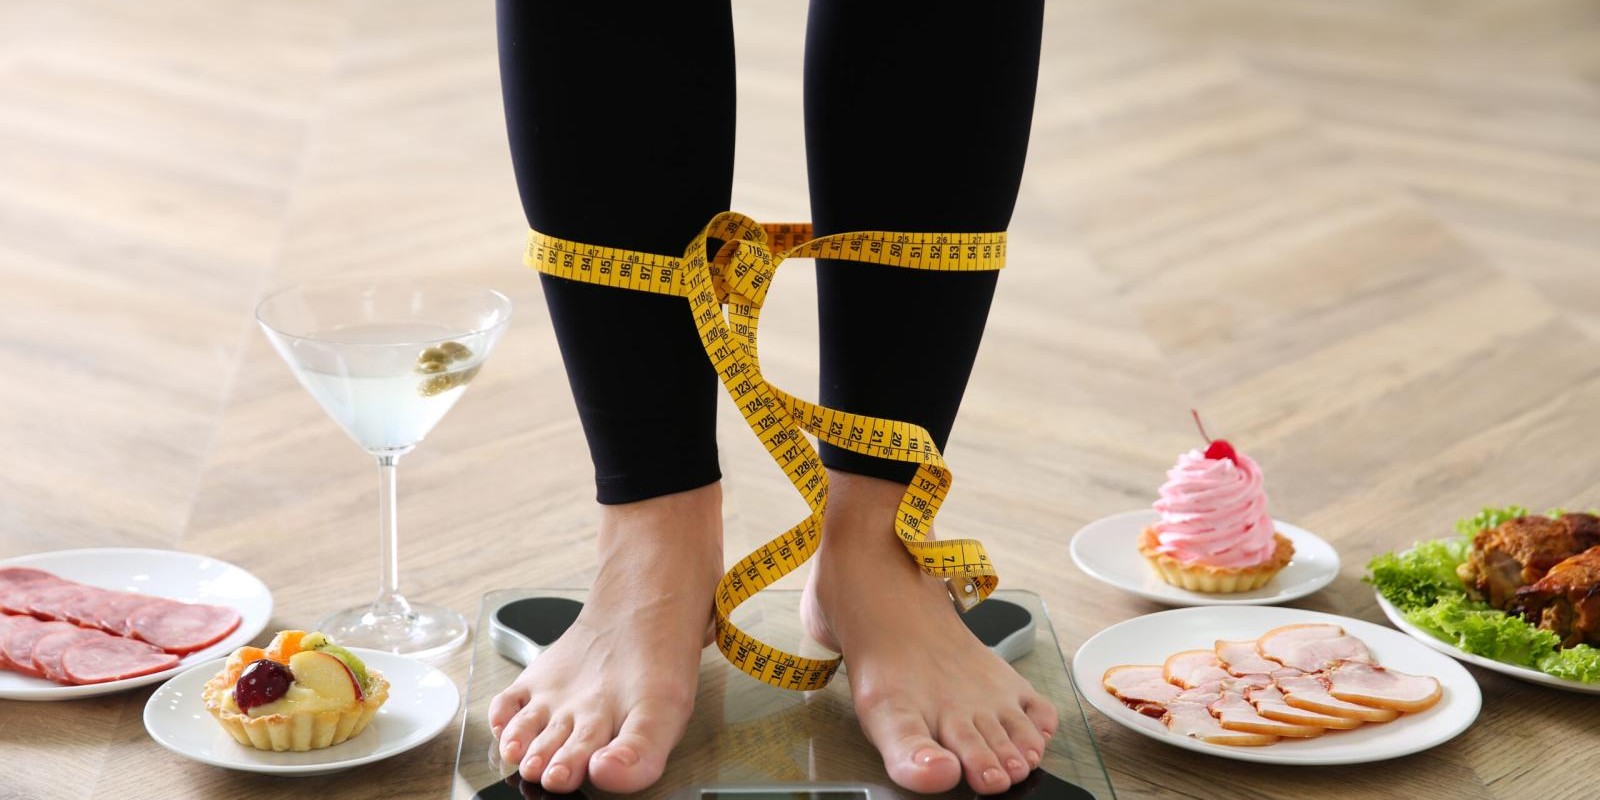 Busca por padrões estéticos pode levar a distúrbios alimentares